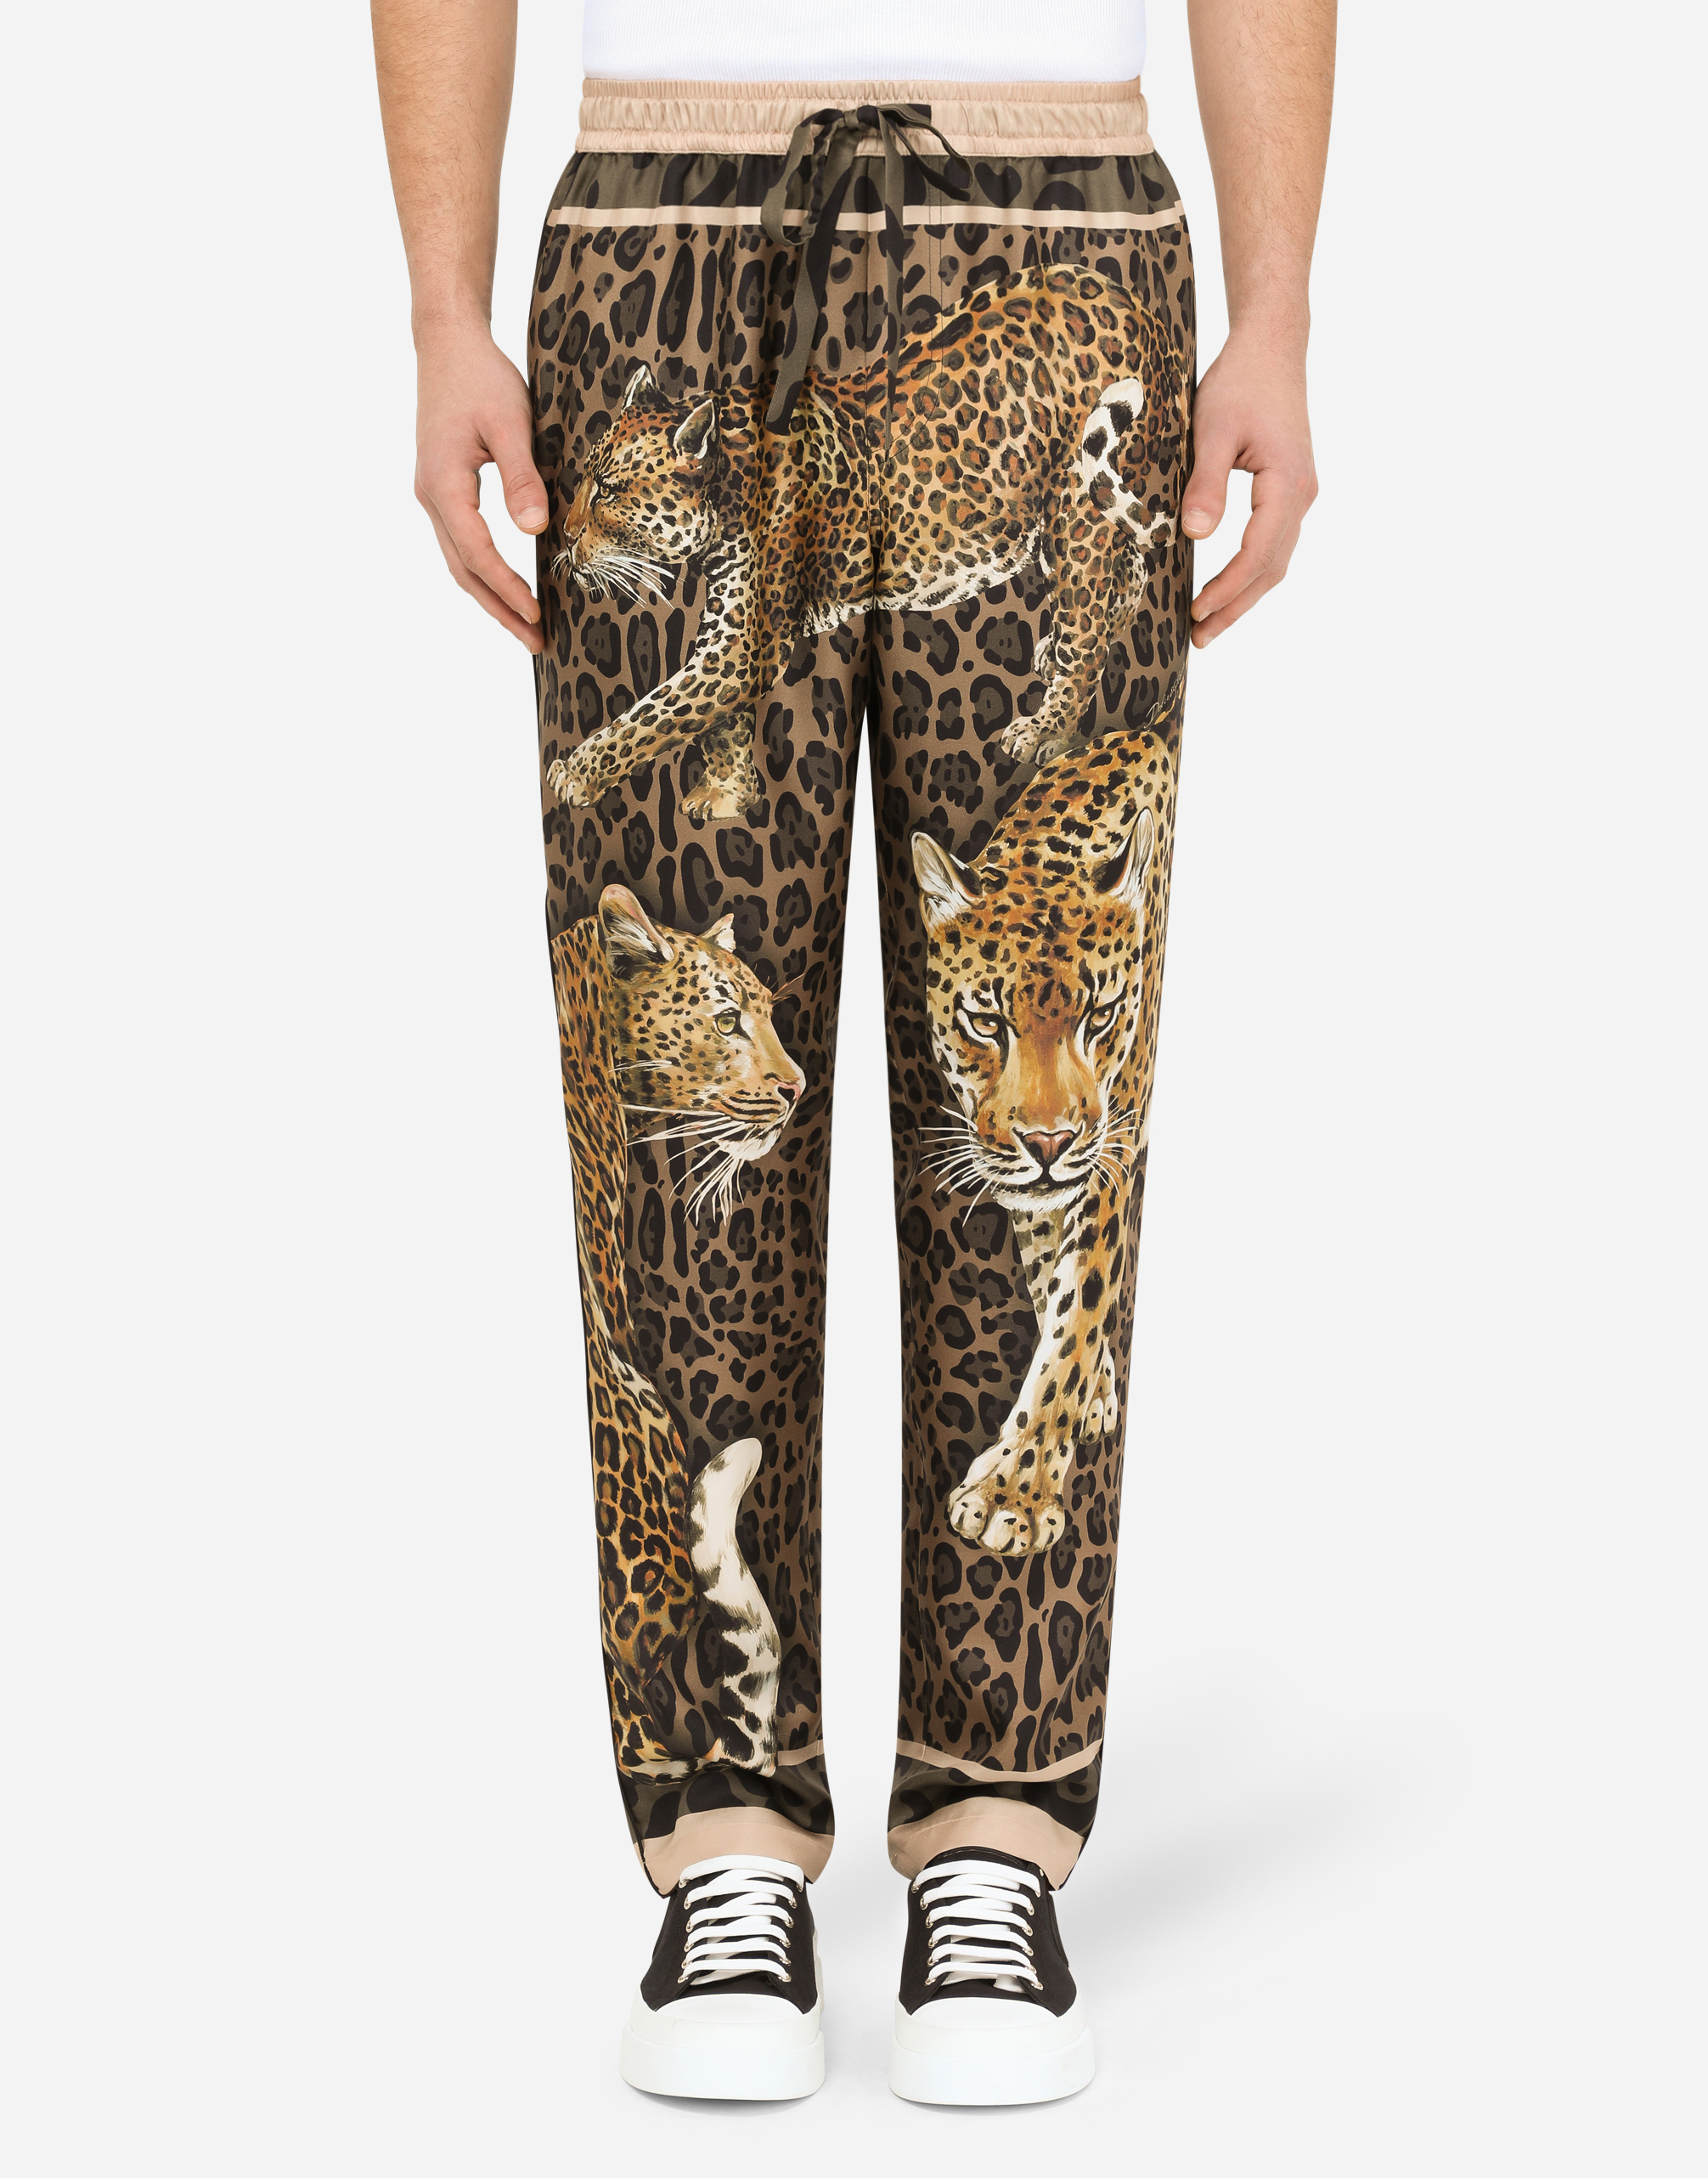 Camisa pijama de seda con estampado de leopardo Dolce & Gabbana de Seda de color Marrón para hombre Hombre Ropa de Ropa para dormir de 